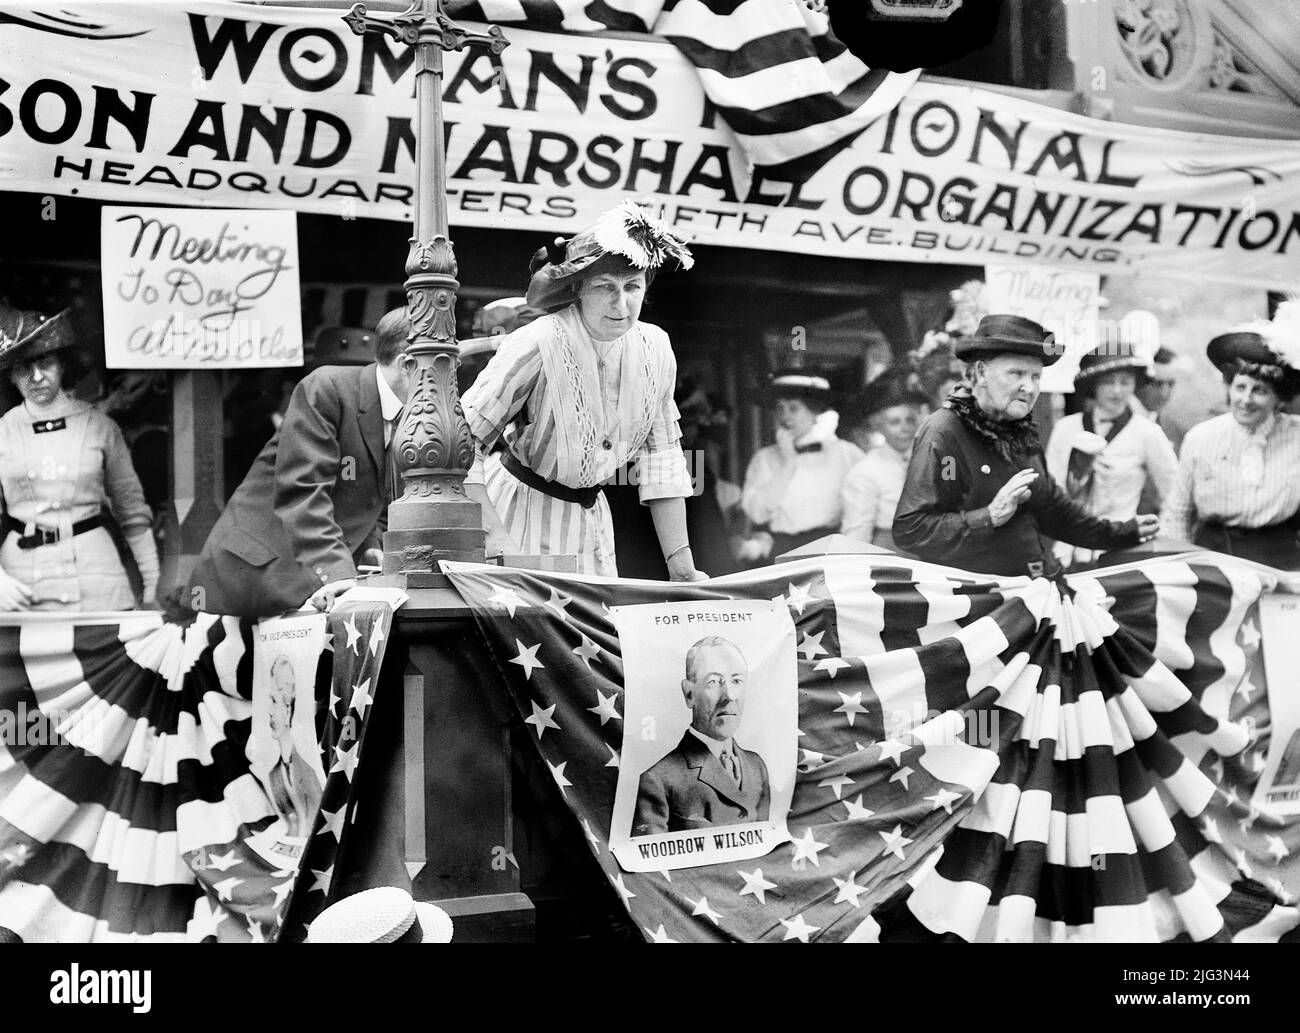 Florence Jaffrey 'Daisy' Harriman, présidente de la Woman's National Wilson and Marshall Organization, assister au rassemblement démocratique, Union Square, New York, New York, Etats-Unis, bain News Service, 20 août 1912 Banque D'Images